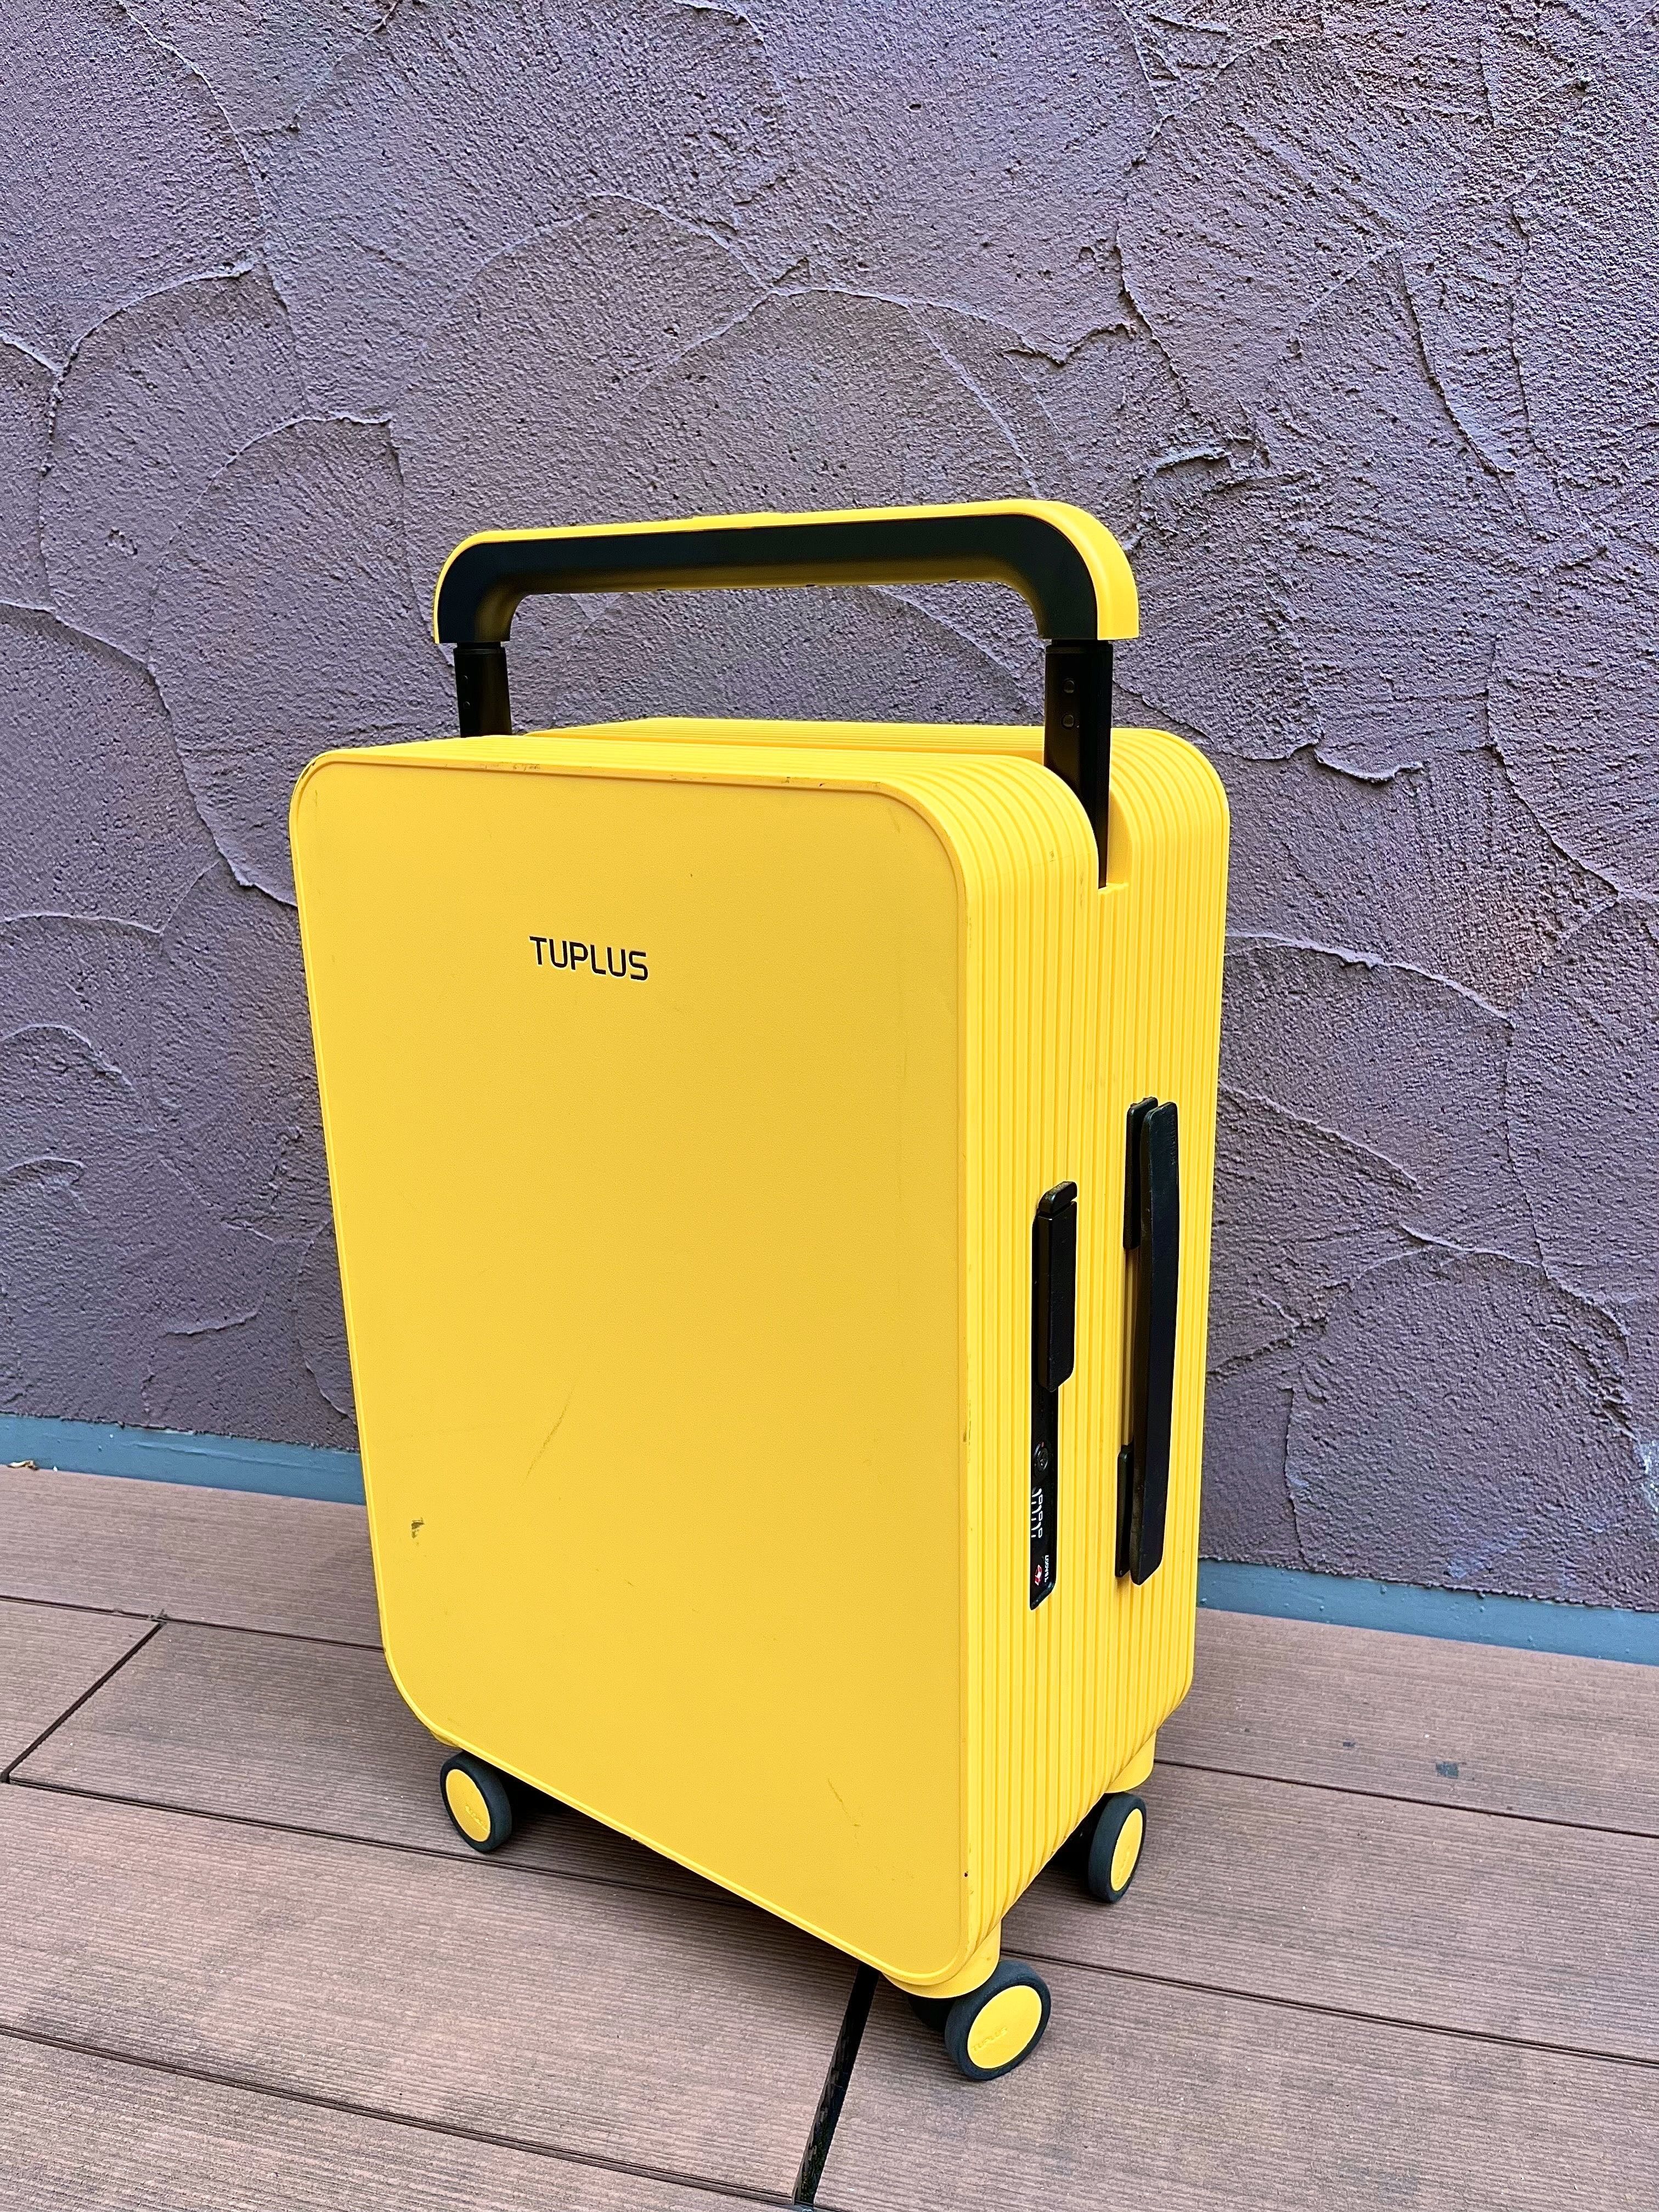 プロテカ スーツケース 日本製 コーリー 機内持込可 35L 2.8kg 2?3泊 キャスターストッパー付 抗ウィルス・抗菌加工内装生地 - 1